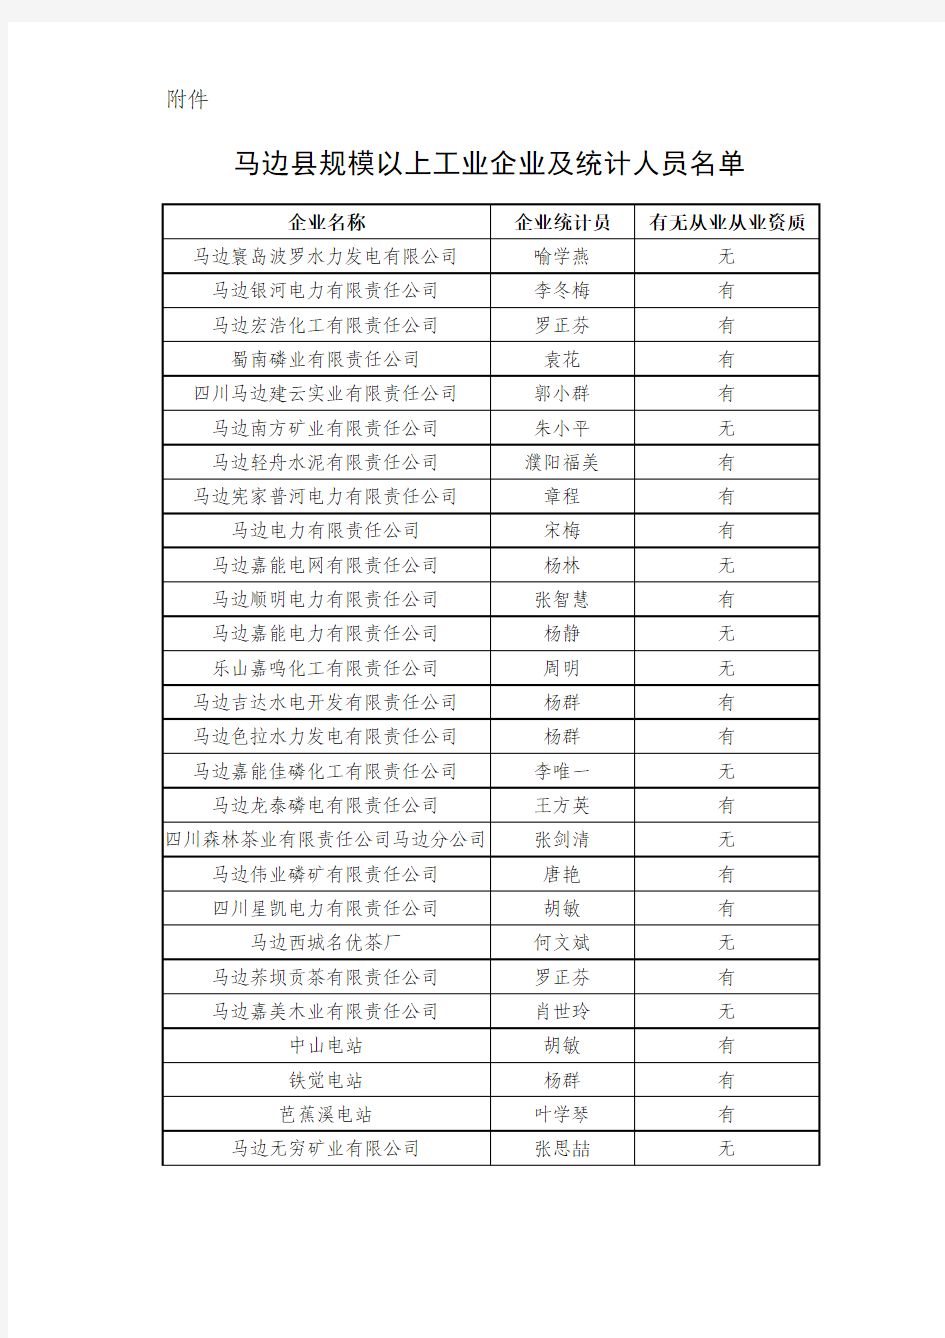 马边县规模以上工业企业及统计人员名单